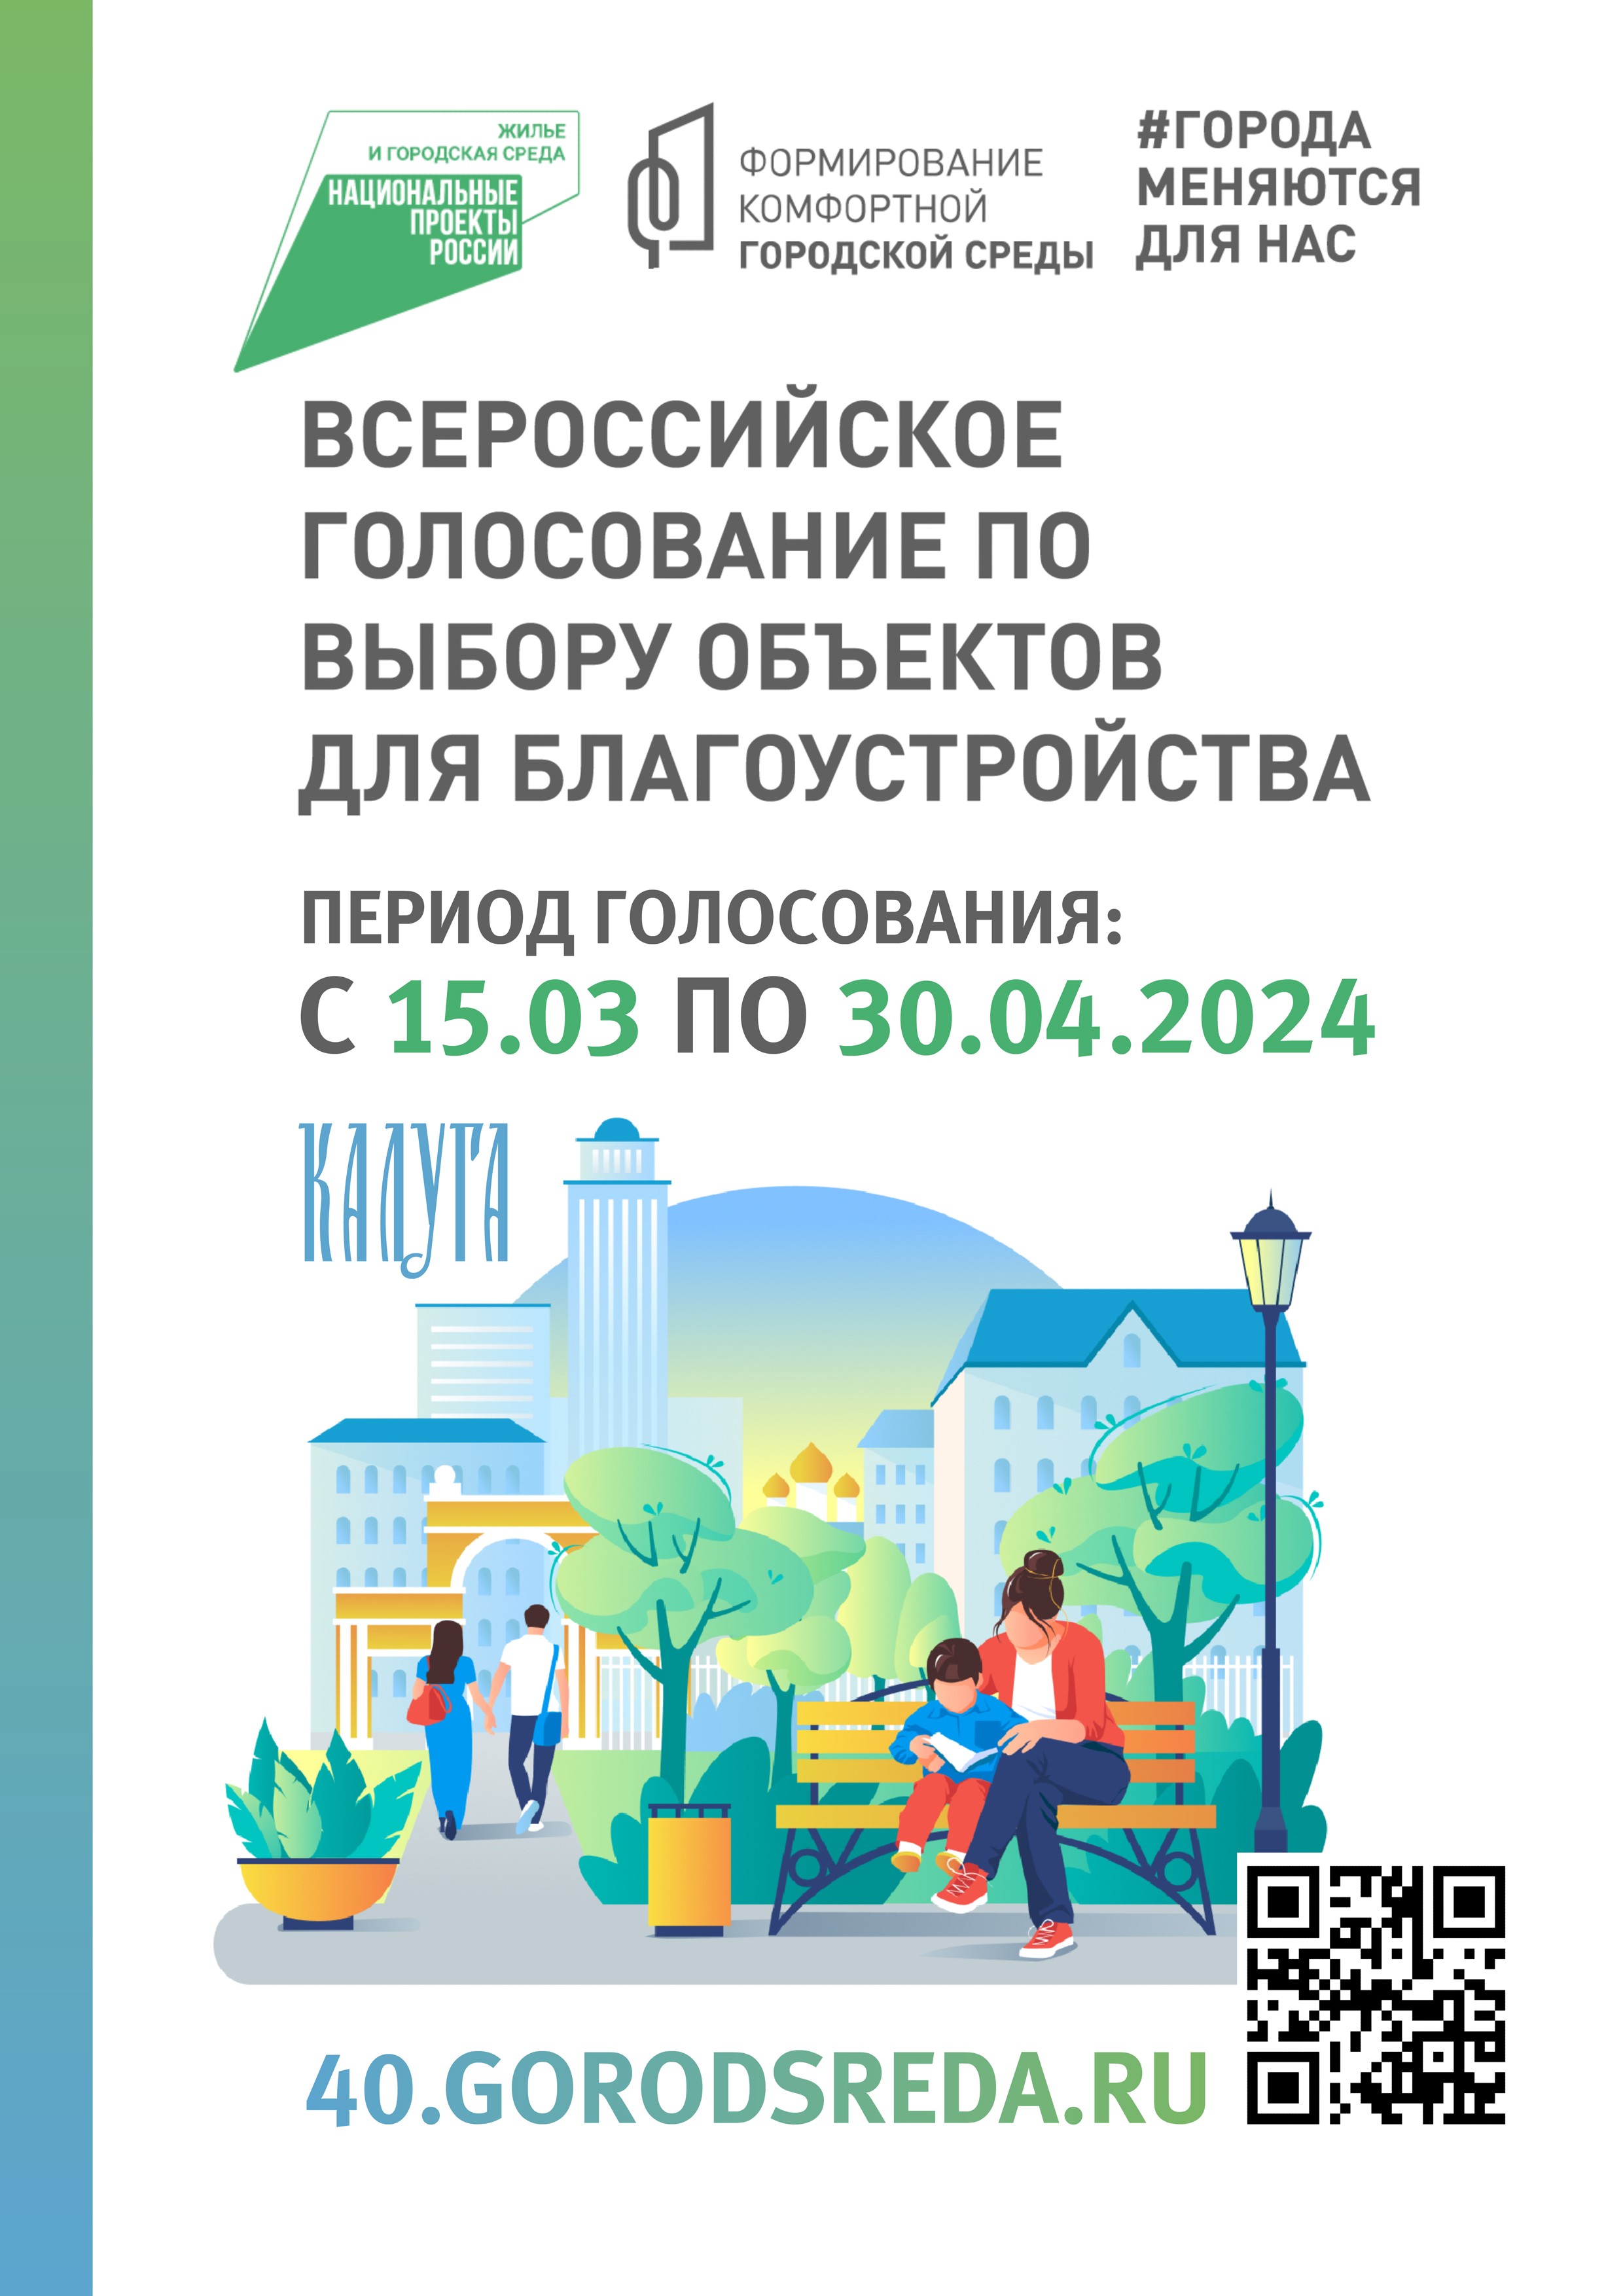 Всероссийское голосование в рамках федерального проекта  «Формирование комфортной городской среды» национального проекта «Жилье и городская среда».